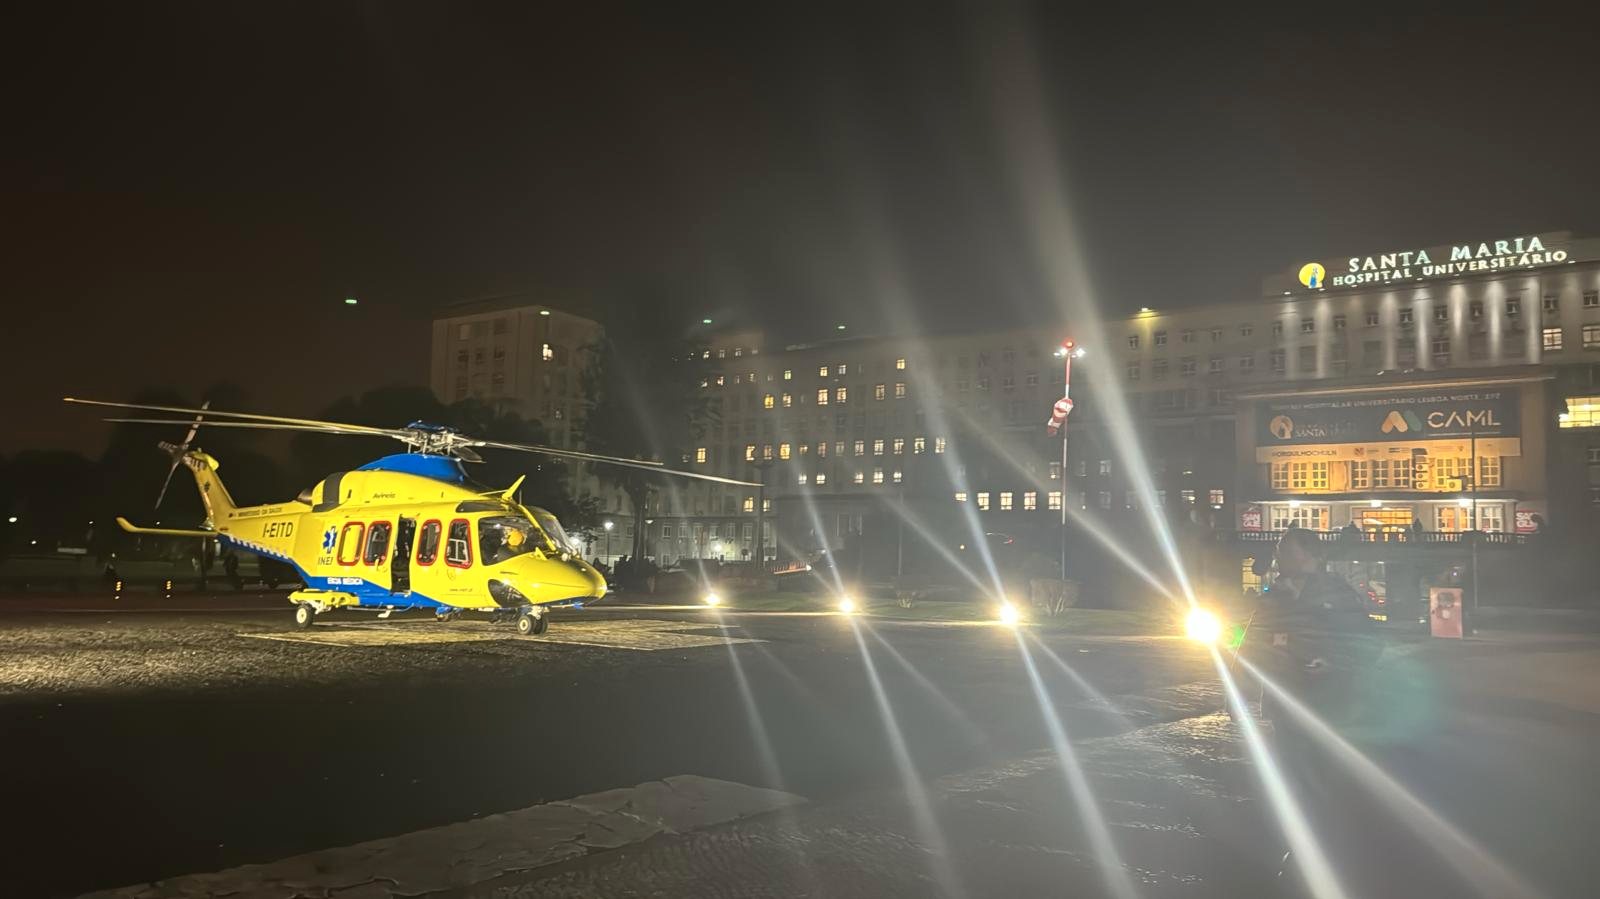 Helicóptero do INEM, vindo de Faro, pousado no heliporto do Santa Maria esta segunda-feira